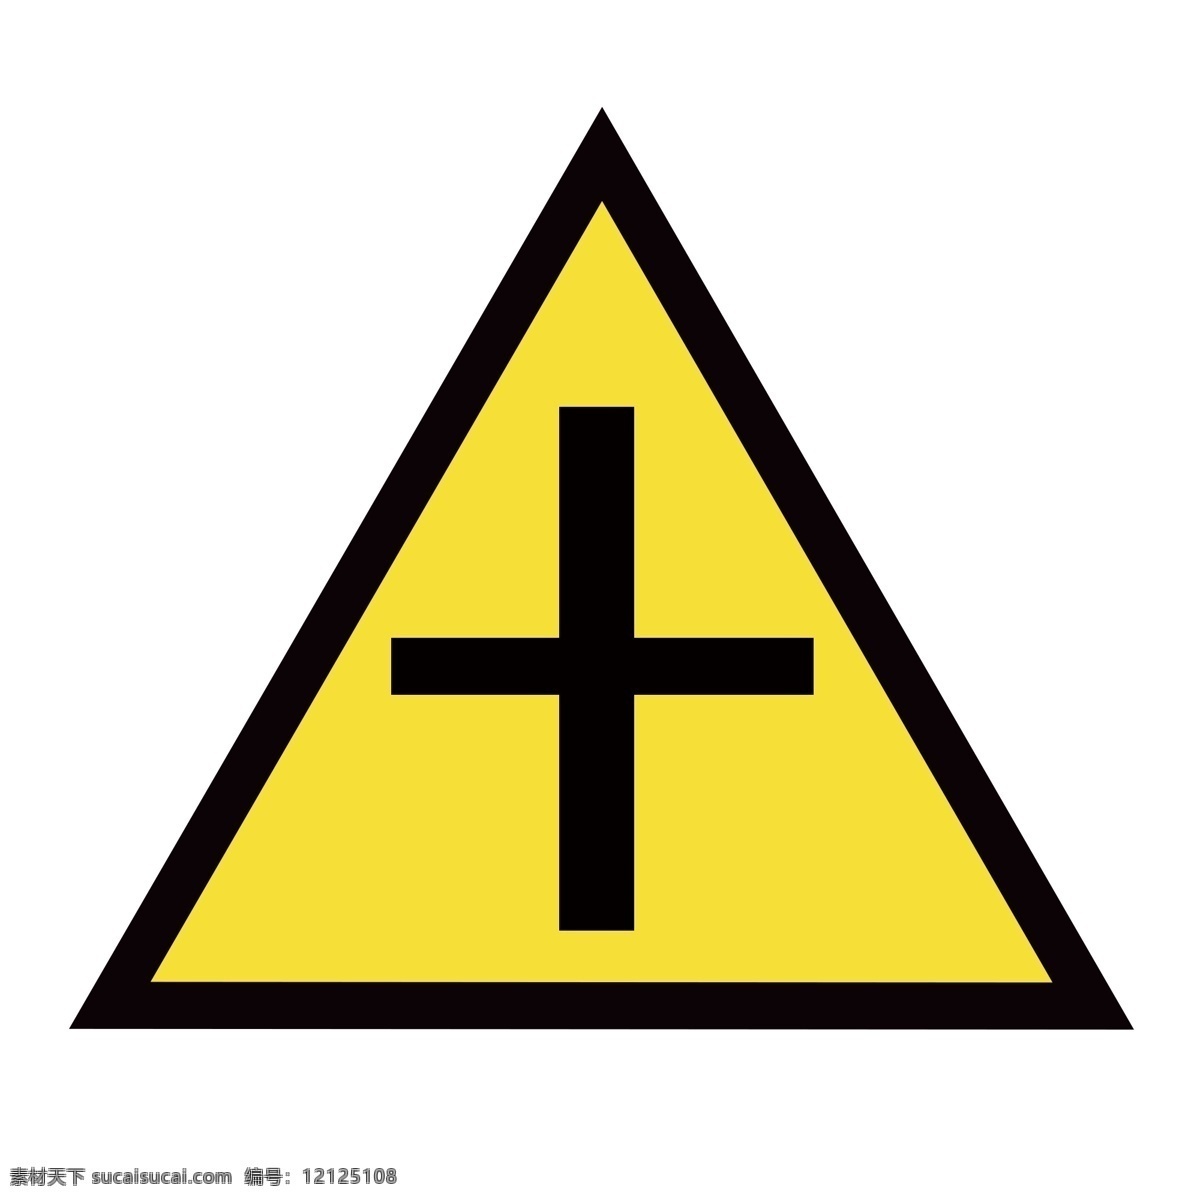 十字路口图标 十字路口 警示类 禁止